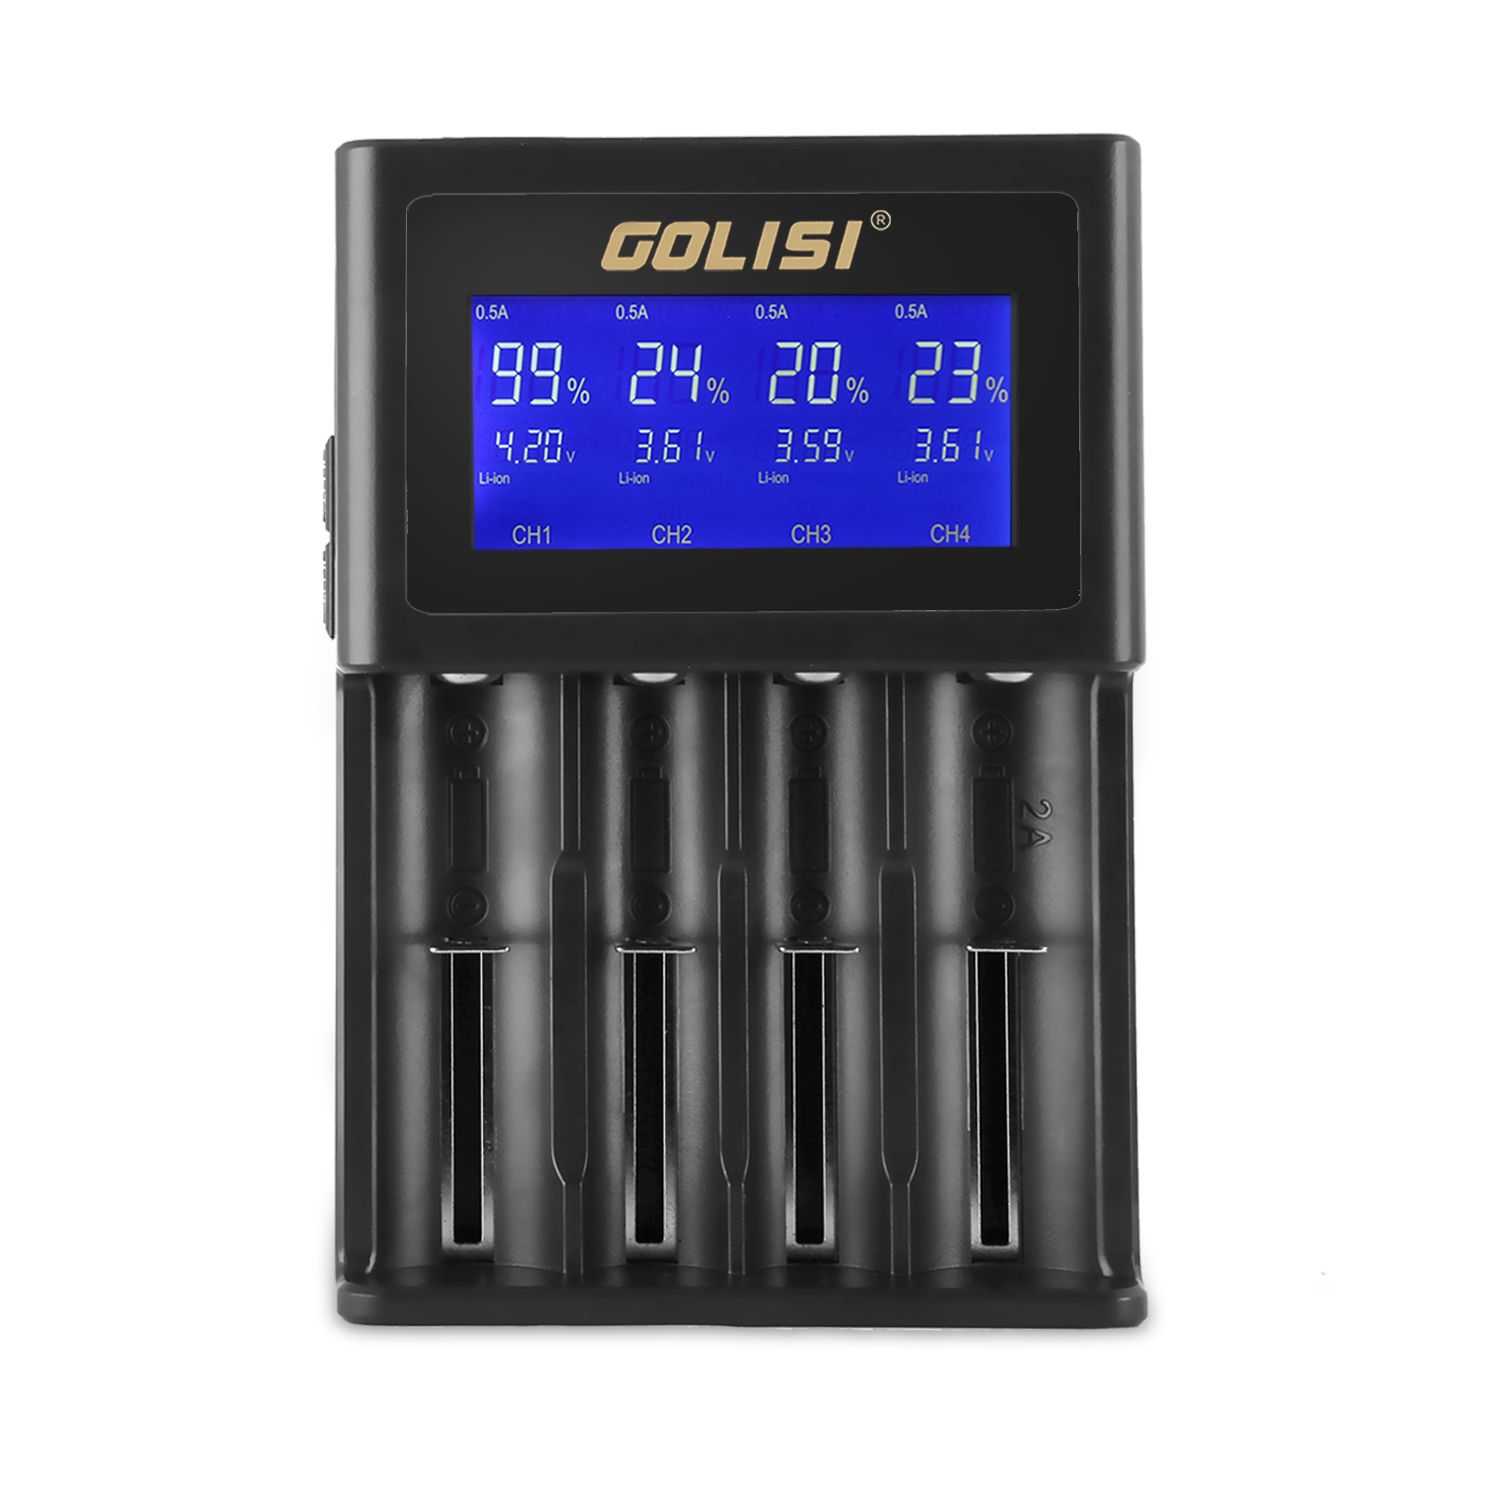 Golisi-S4-HD-LCD-Display-Smart-Li-ion-Ni-cdNi-mdAAAAA-Battery-Charger-1181726